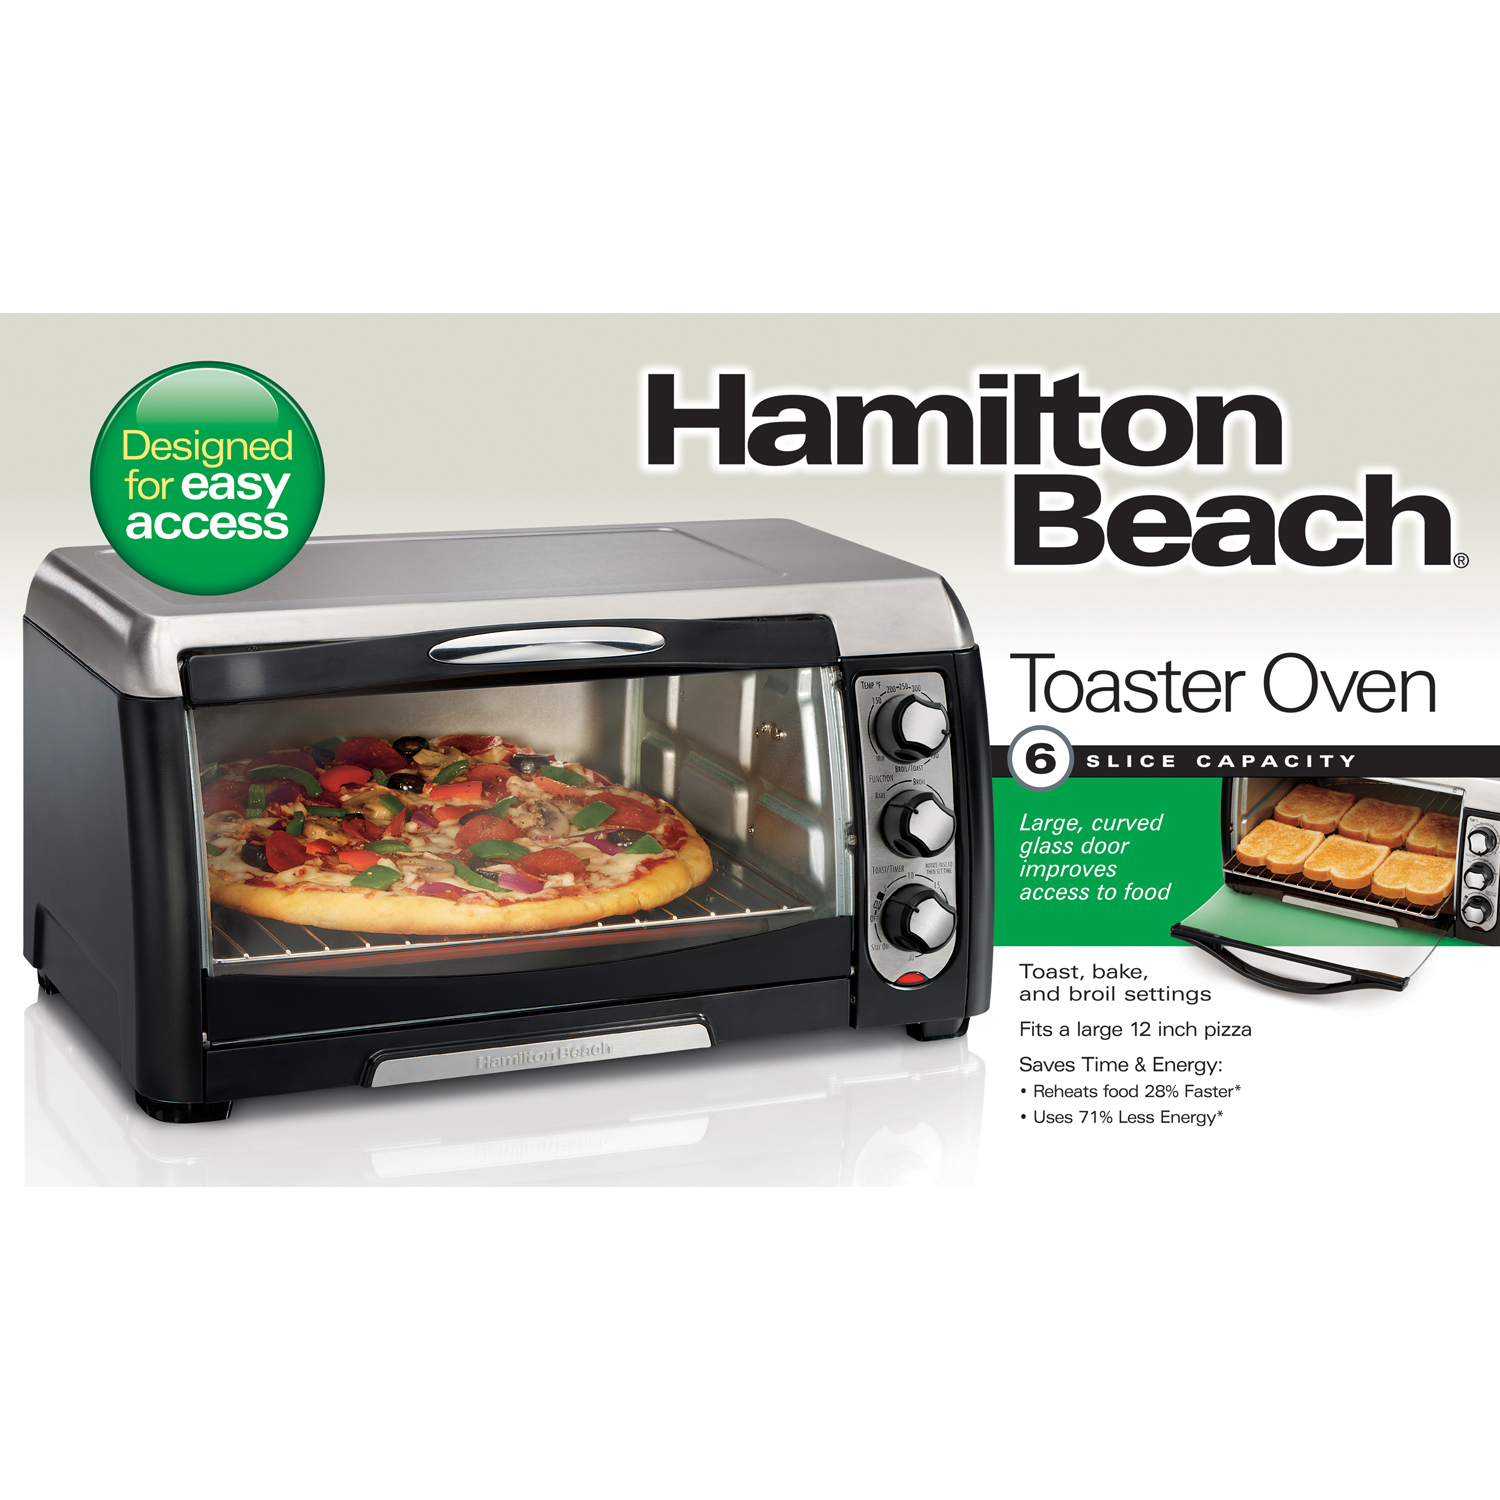 Hamilton Beach 31335 Ensemble 6-Slice Toaster Oven, Black